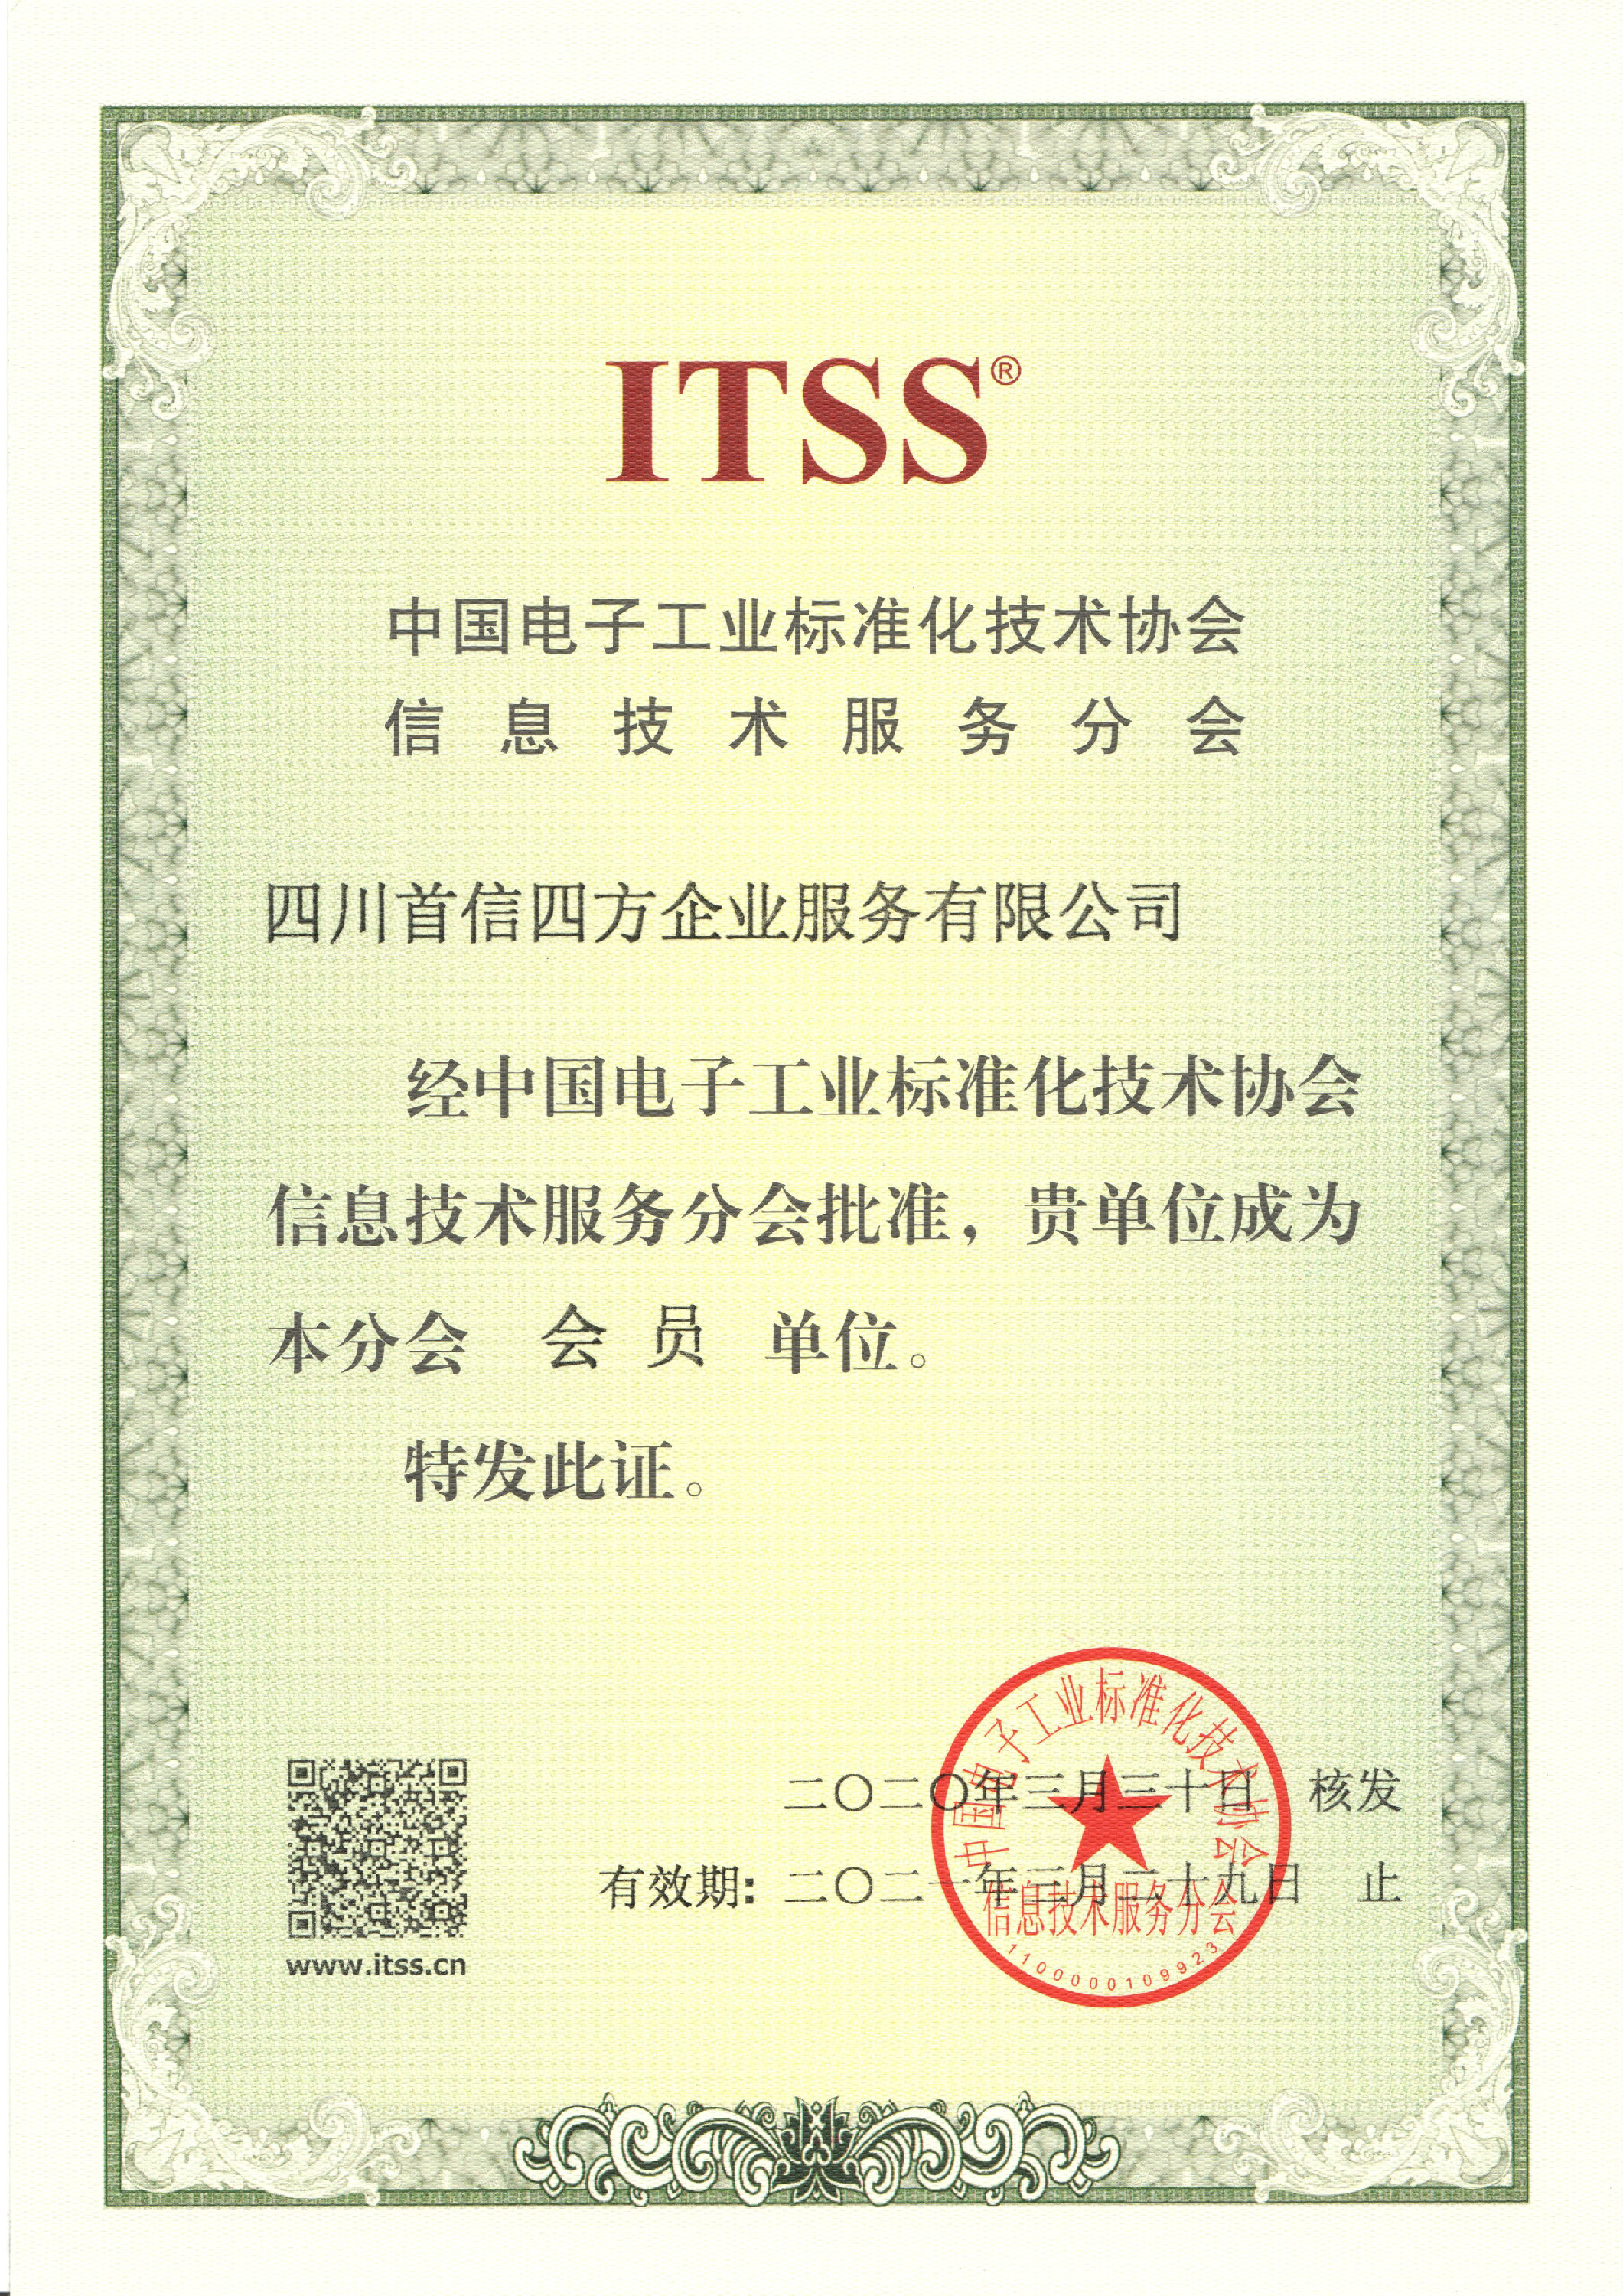 【喜讯】首信四方 正式成为 ITSS会员单位！